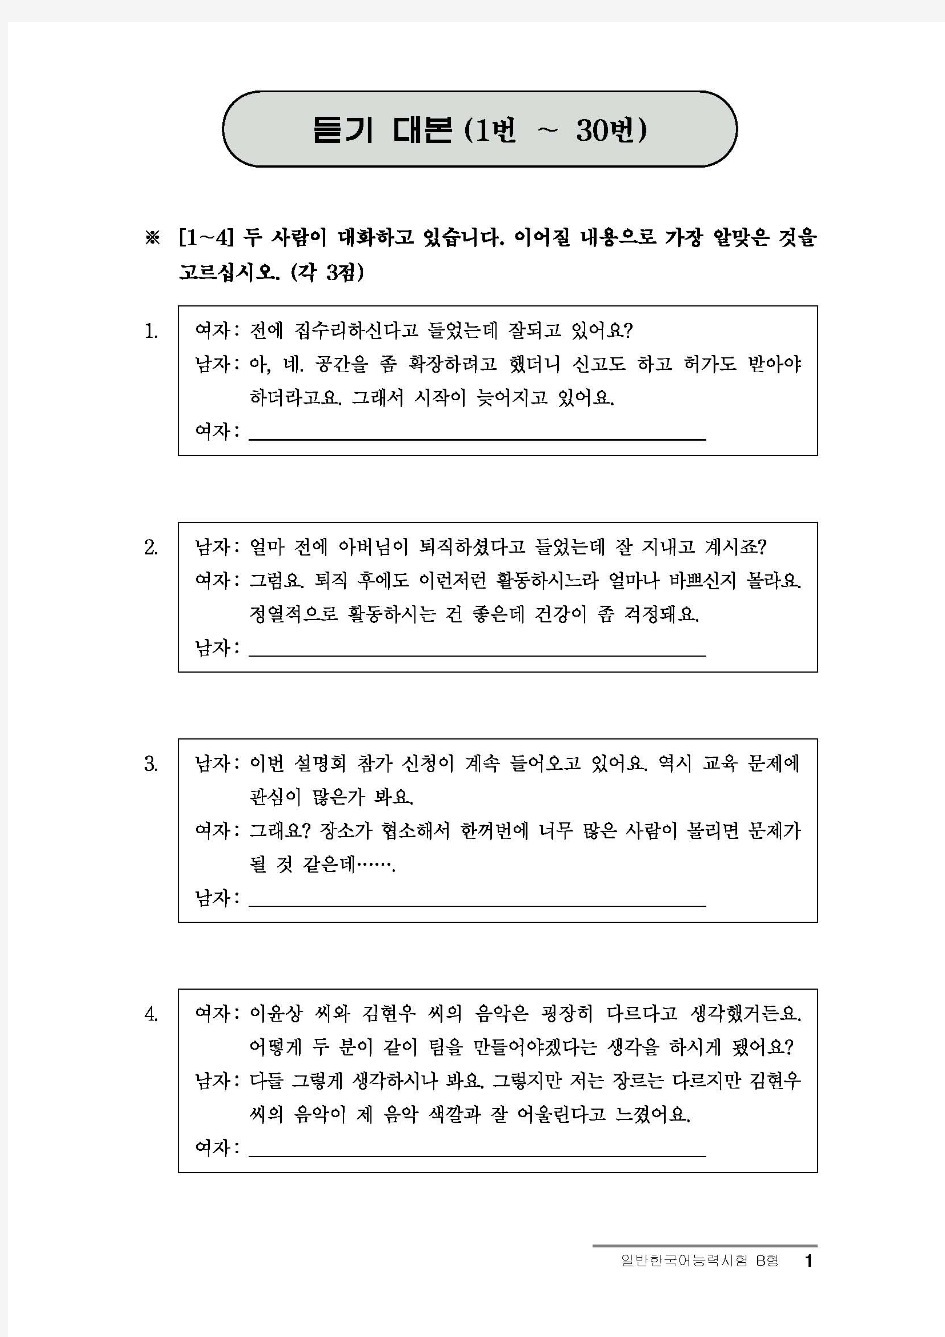 韩国语TOPIK考试22届高级听力对本